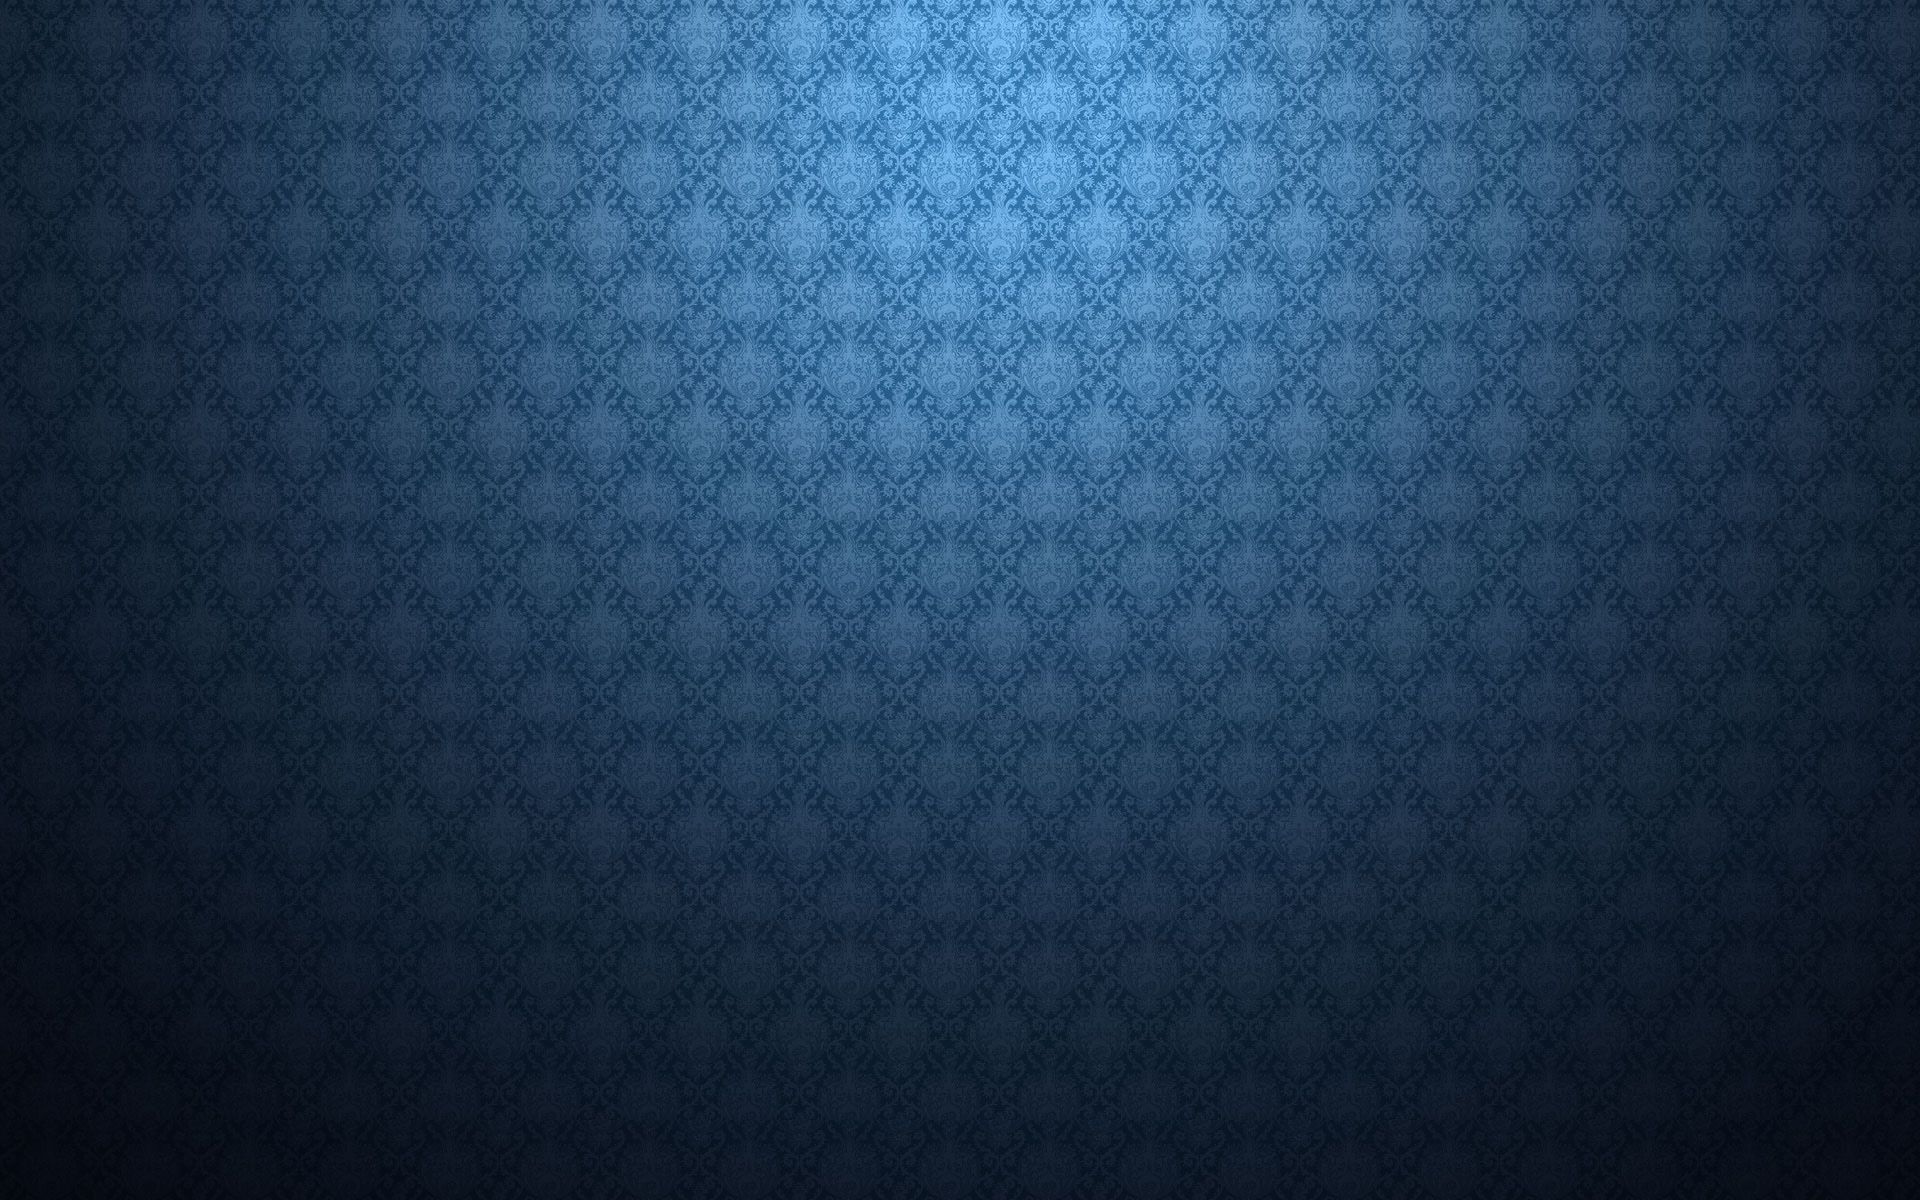 Blue Patterned Wallpaper - Desktop Backgrounds